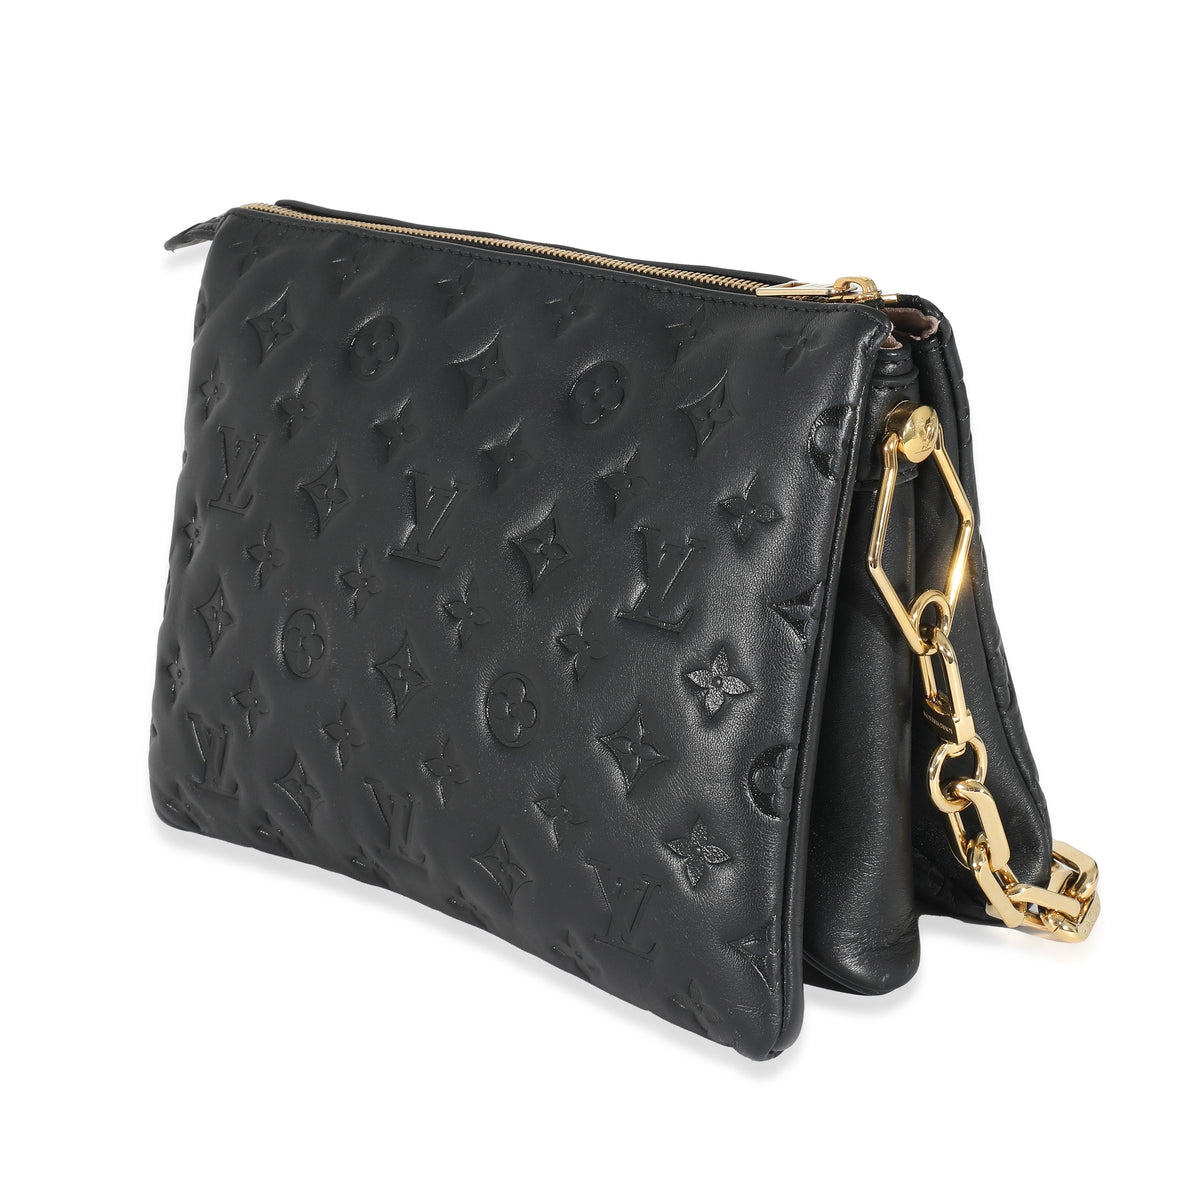 Louis Vuitton COUSSIN BB Handbag Grained Calfskin Leather Pink